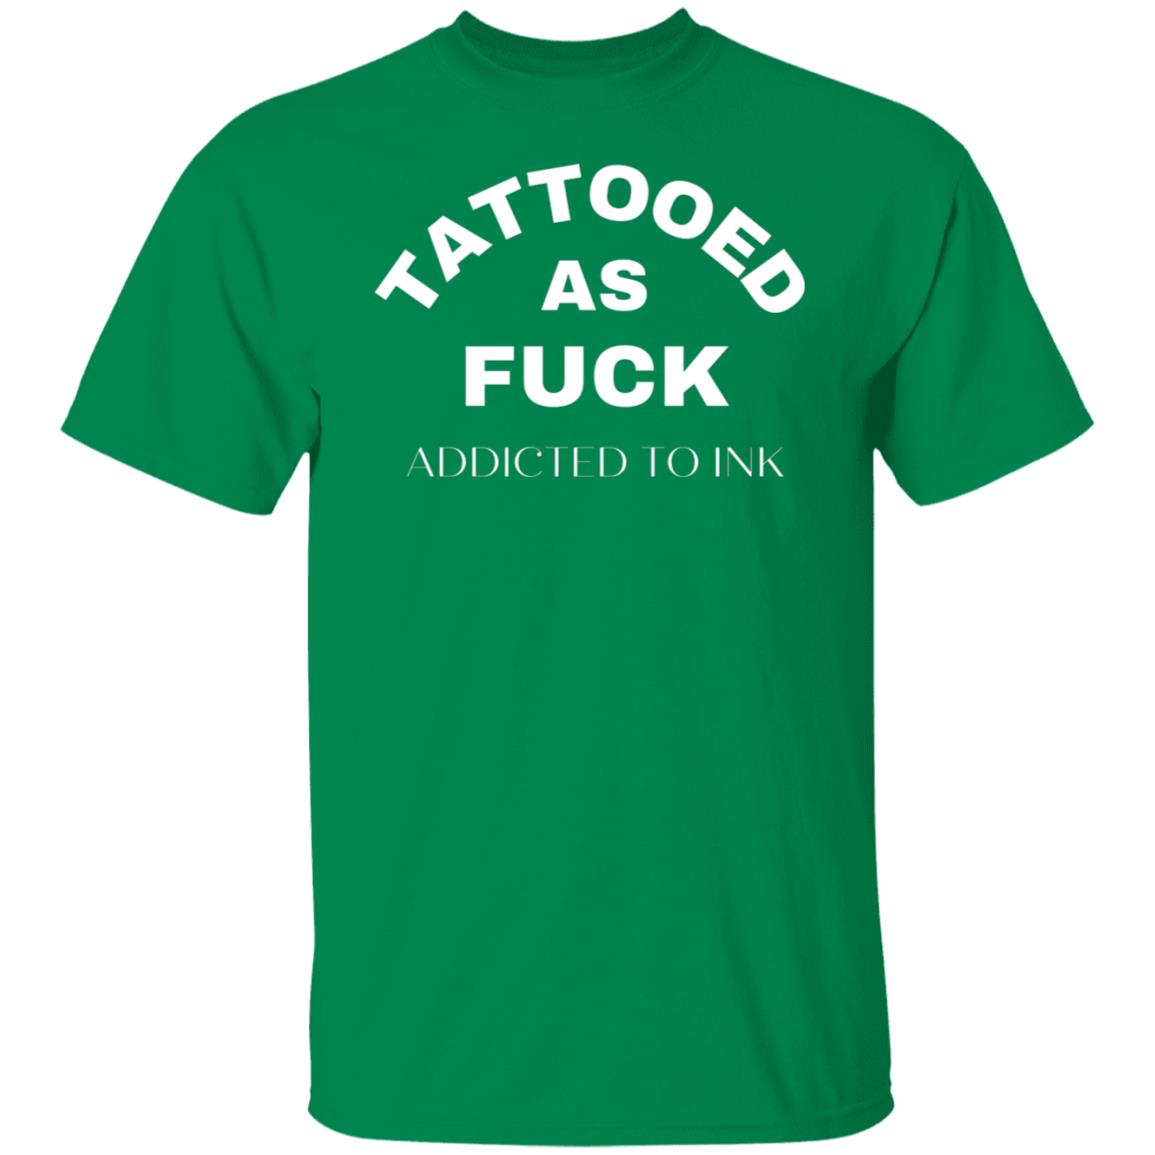 Tattooed As F@CK Funny Tattoo T-Shirt